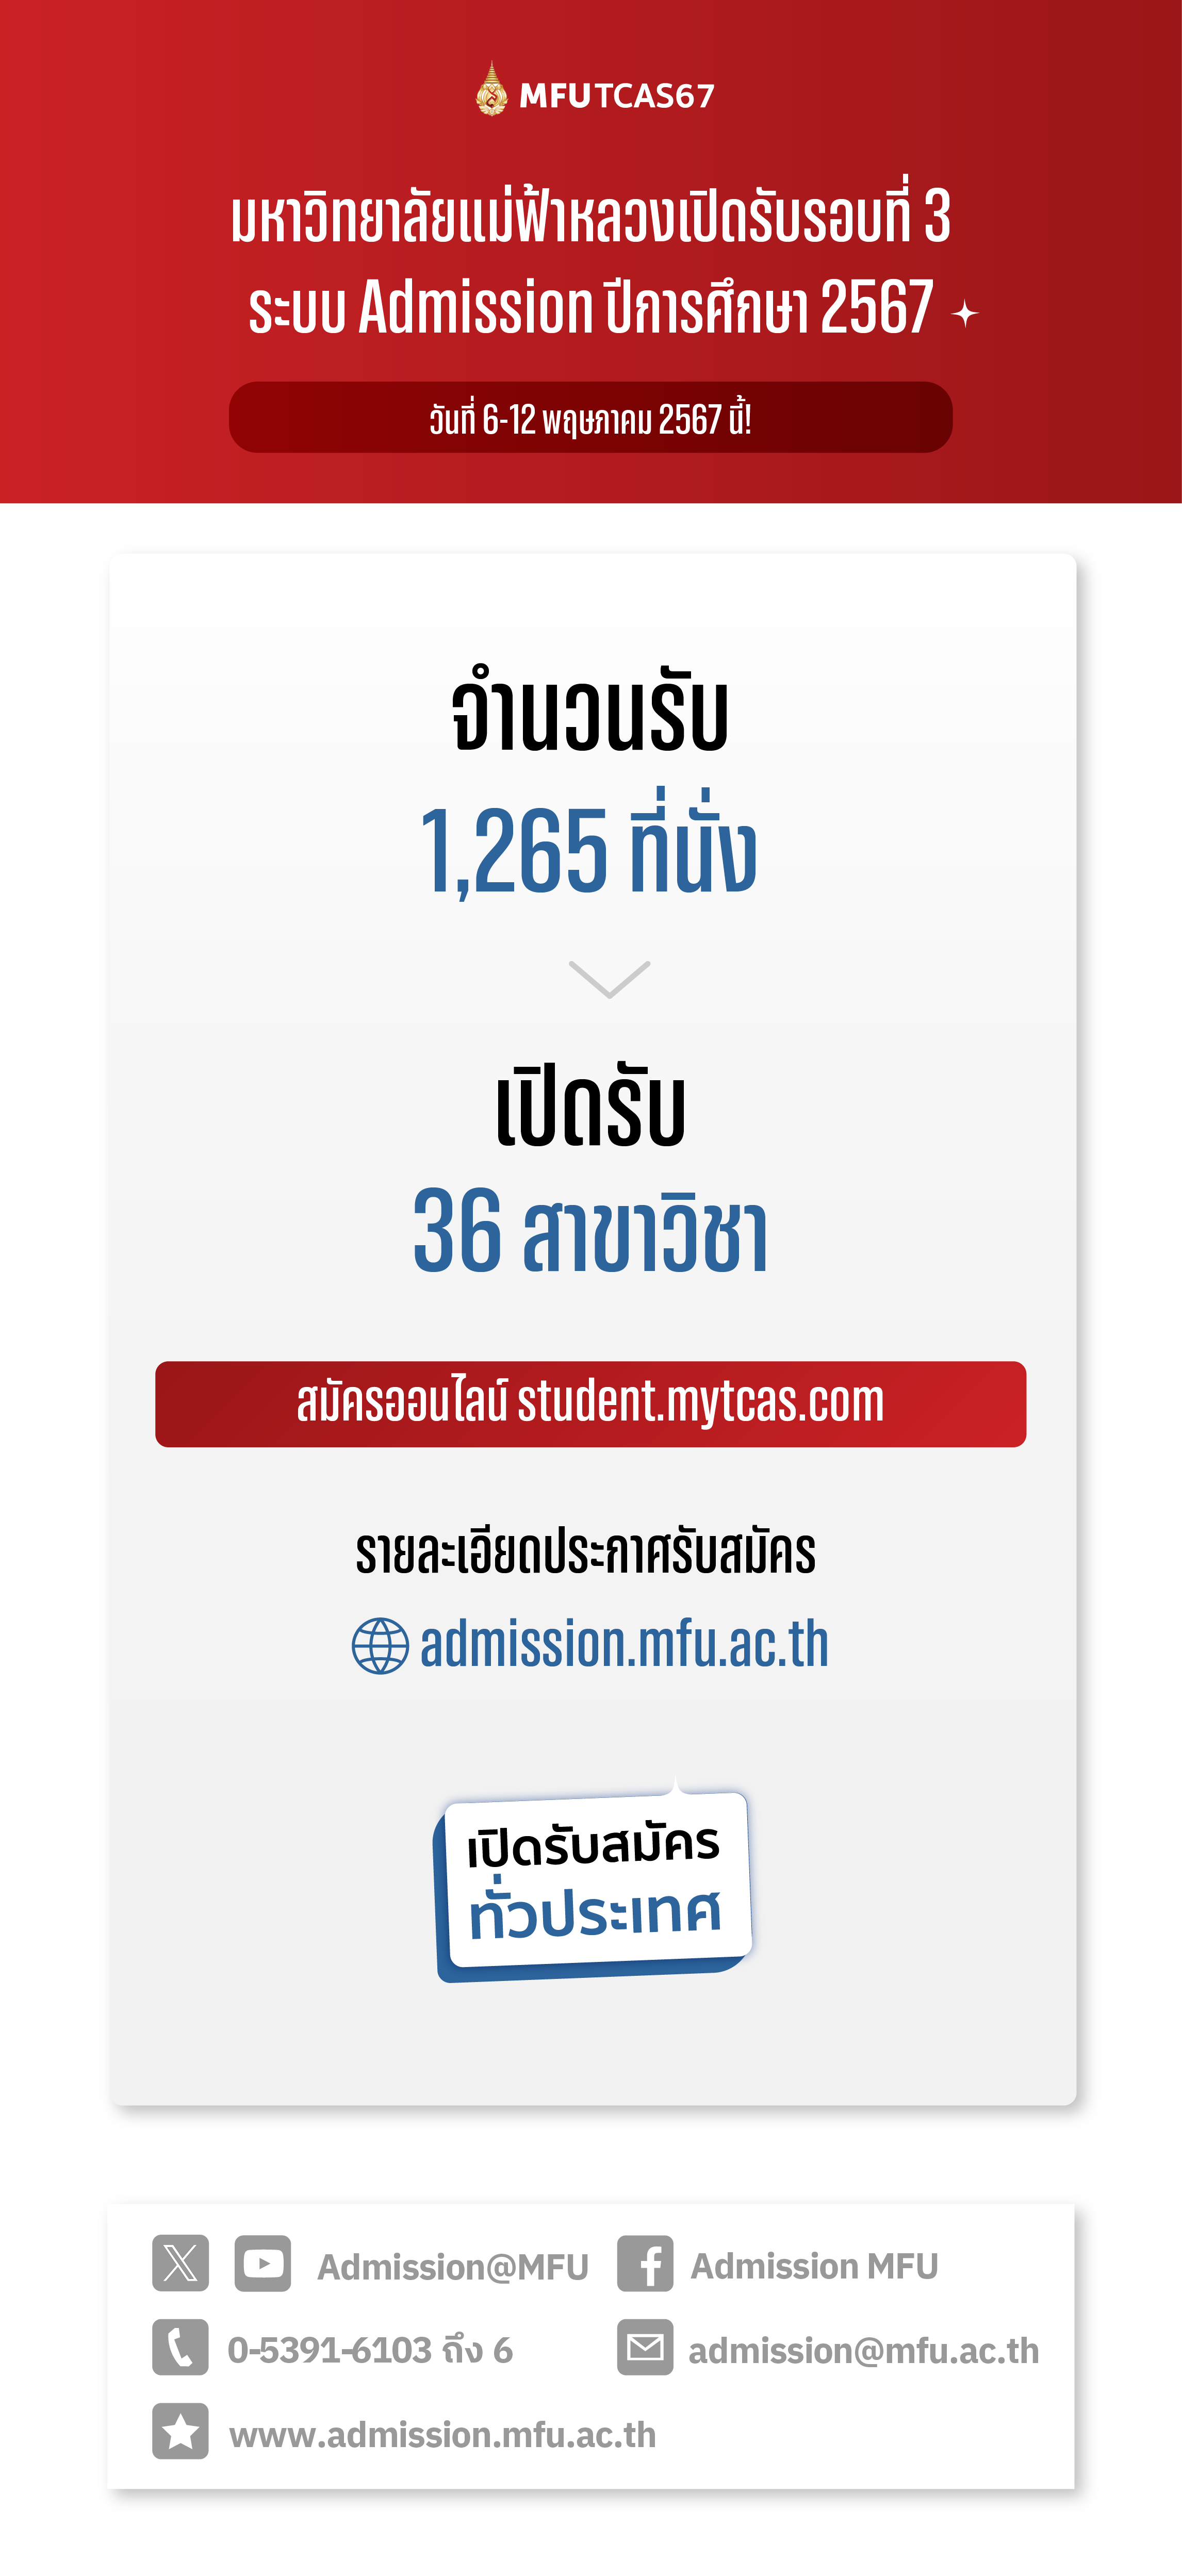 การรับนักศึกษาใหม่ ระดับปริญญาตรี ปีการศึกษา 2567 รอบที่ 3 ระบบ Admission